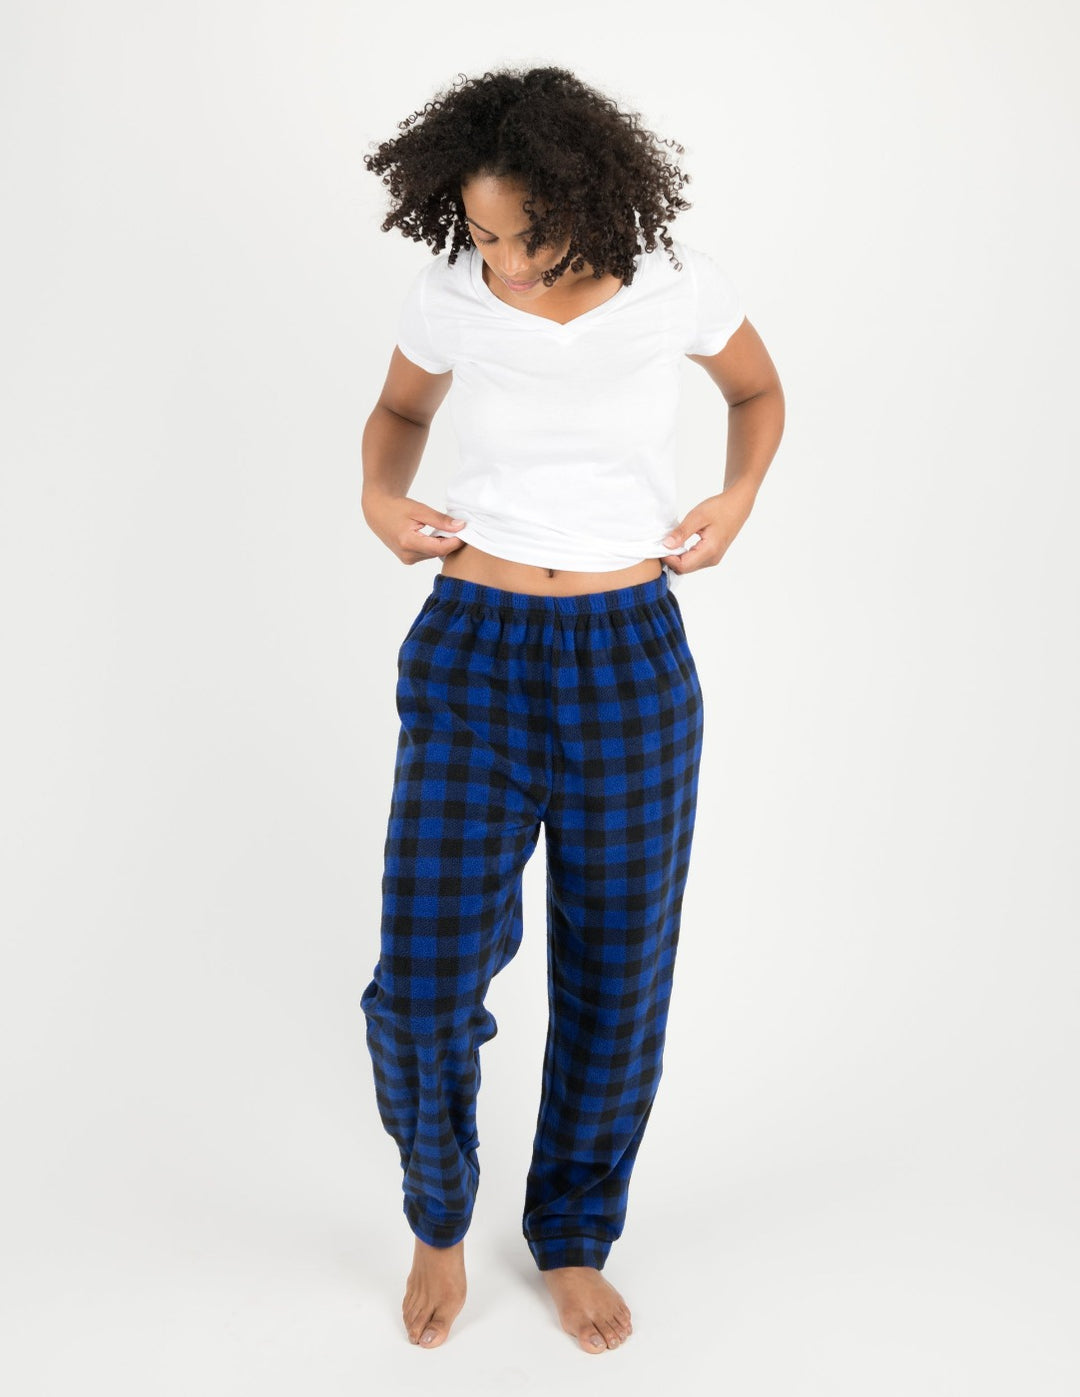 Leveret Women's Fleece Plaid Pants – Leveret Clothing